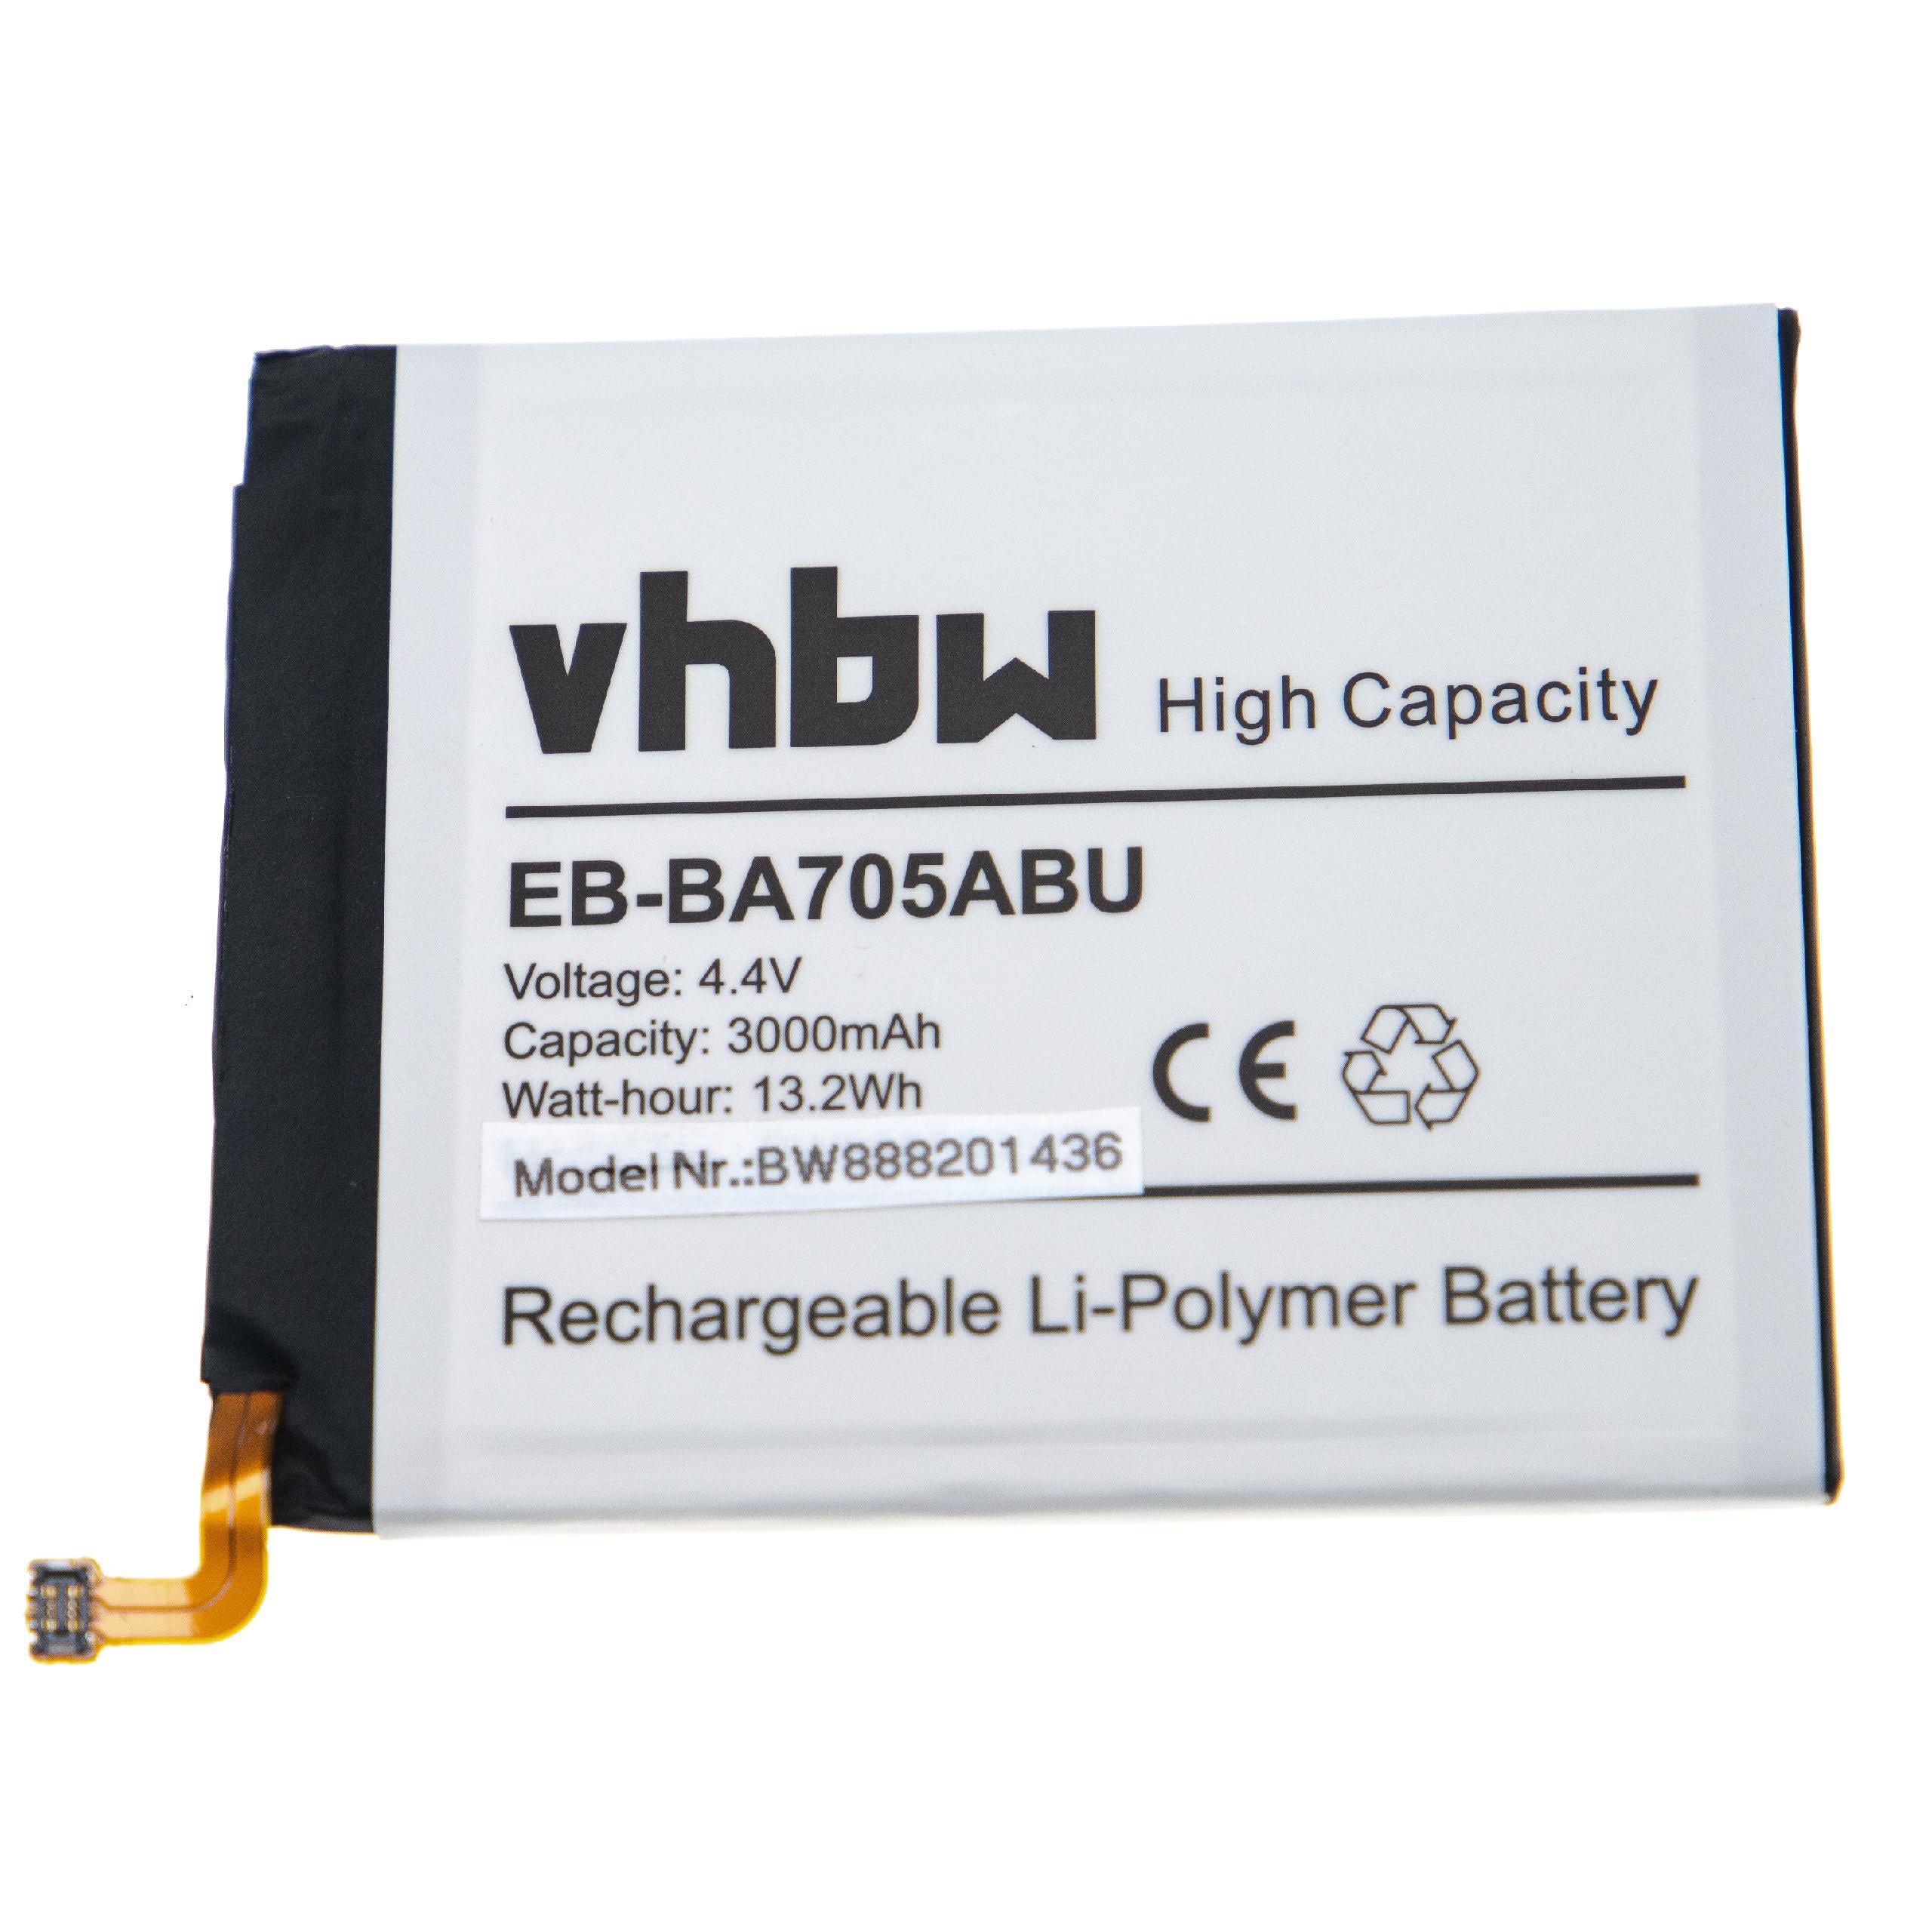 Batterie polymère Rechargeable DC 12V 3000mAh Li-ion avec chargeur